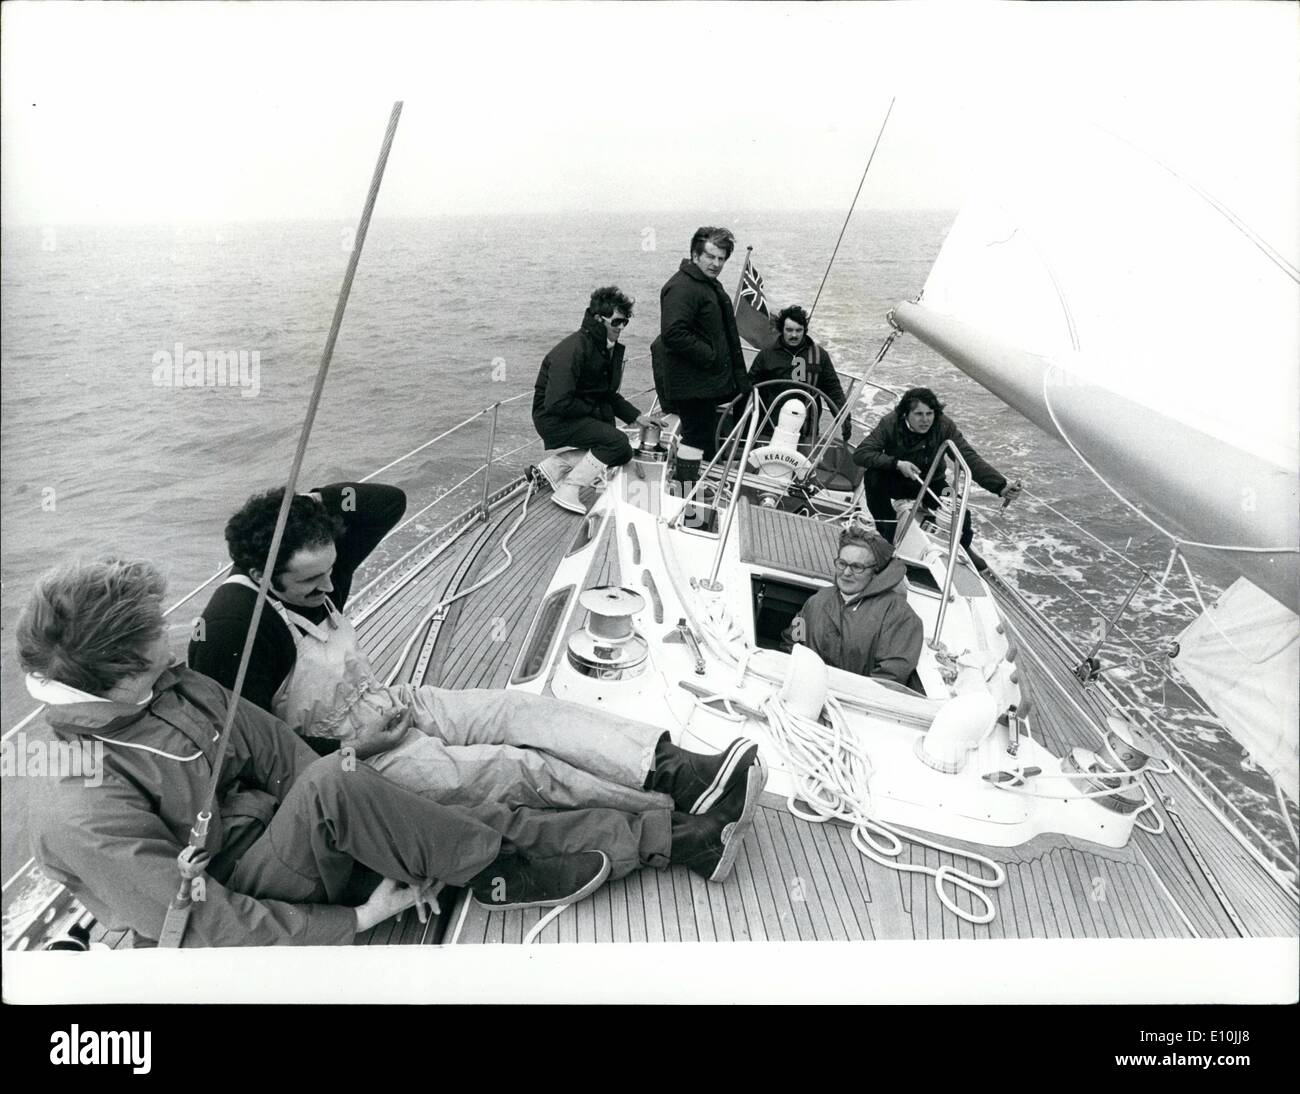 Mar. 03, 1973 - Procès de l'Admiral's Cup dans le Solent : M. Lealie Holliday (debout dans l'arrière) et sa femme, Joan, mettant leur 44ft-finlandais construit yacht, Kealoha, grâce à son rythme dans le Solent hier. Il est parmi les 38 bateaux à partir de laquelle la Grande-Bretagne va choisir trois pour défendre l'Admiral's Cup en août. Banque D'Images